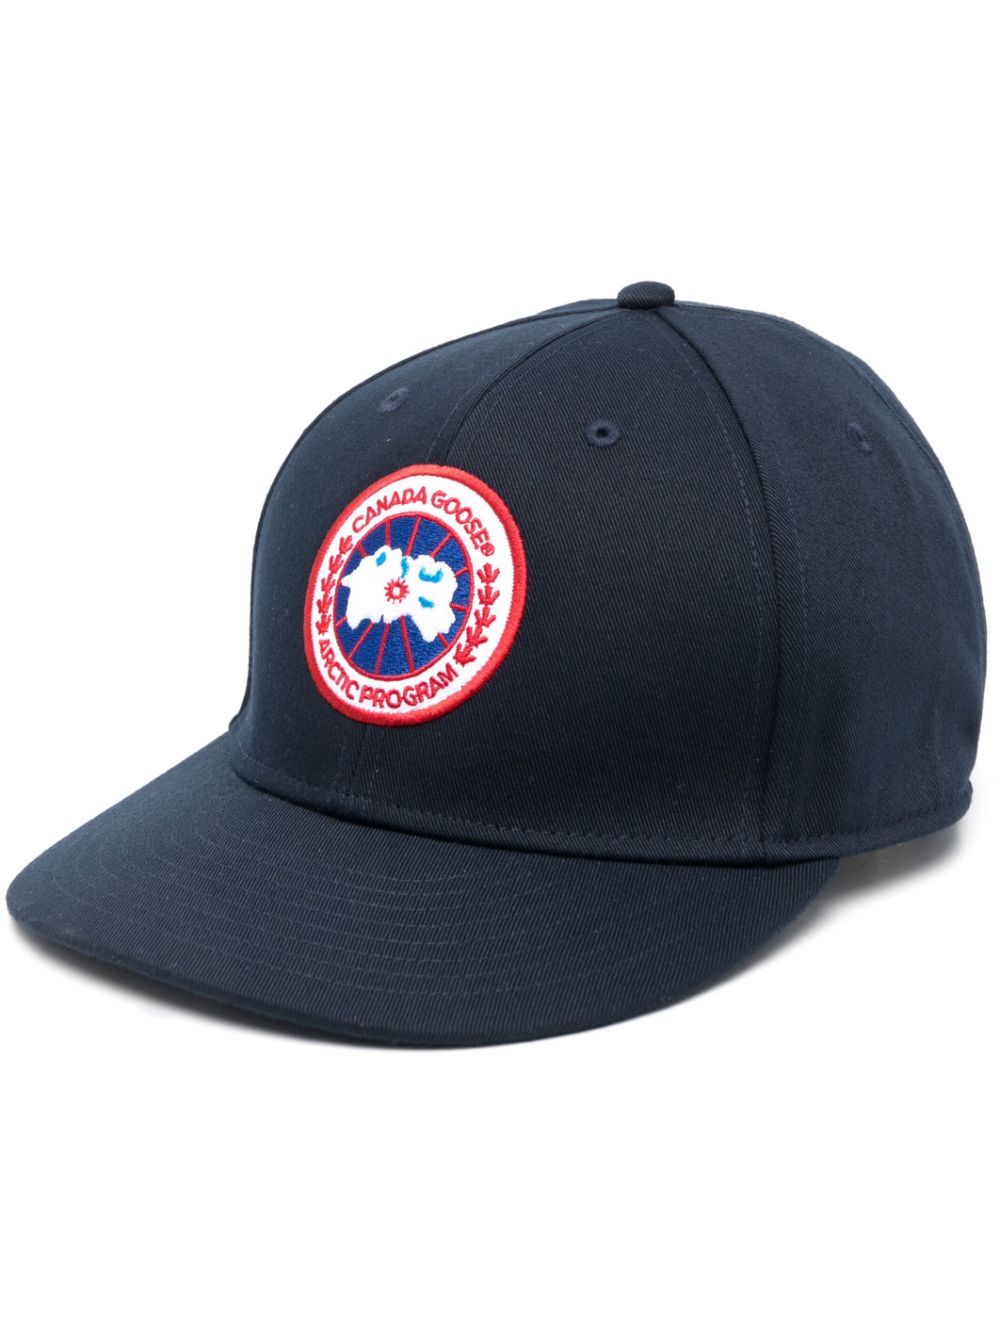 Canada Goose CANADA GOOSE- Logo Baseball Cap